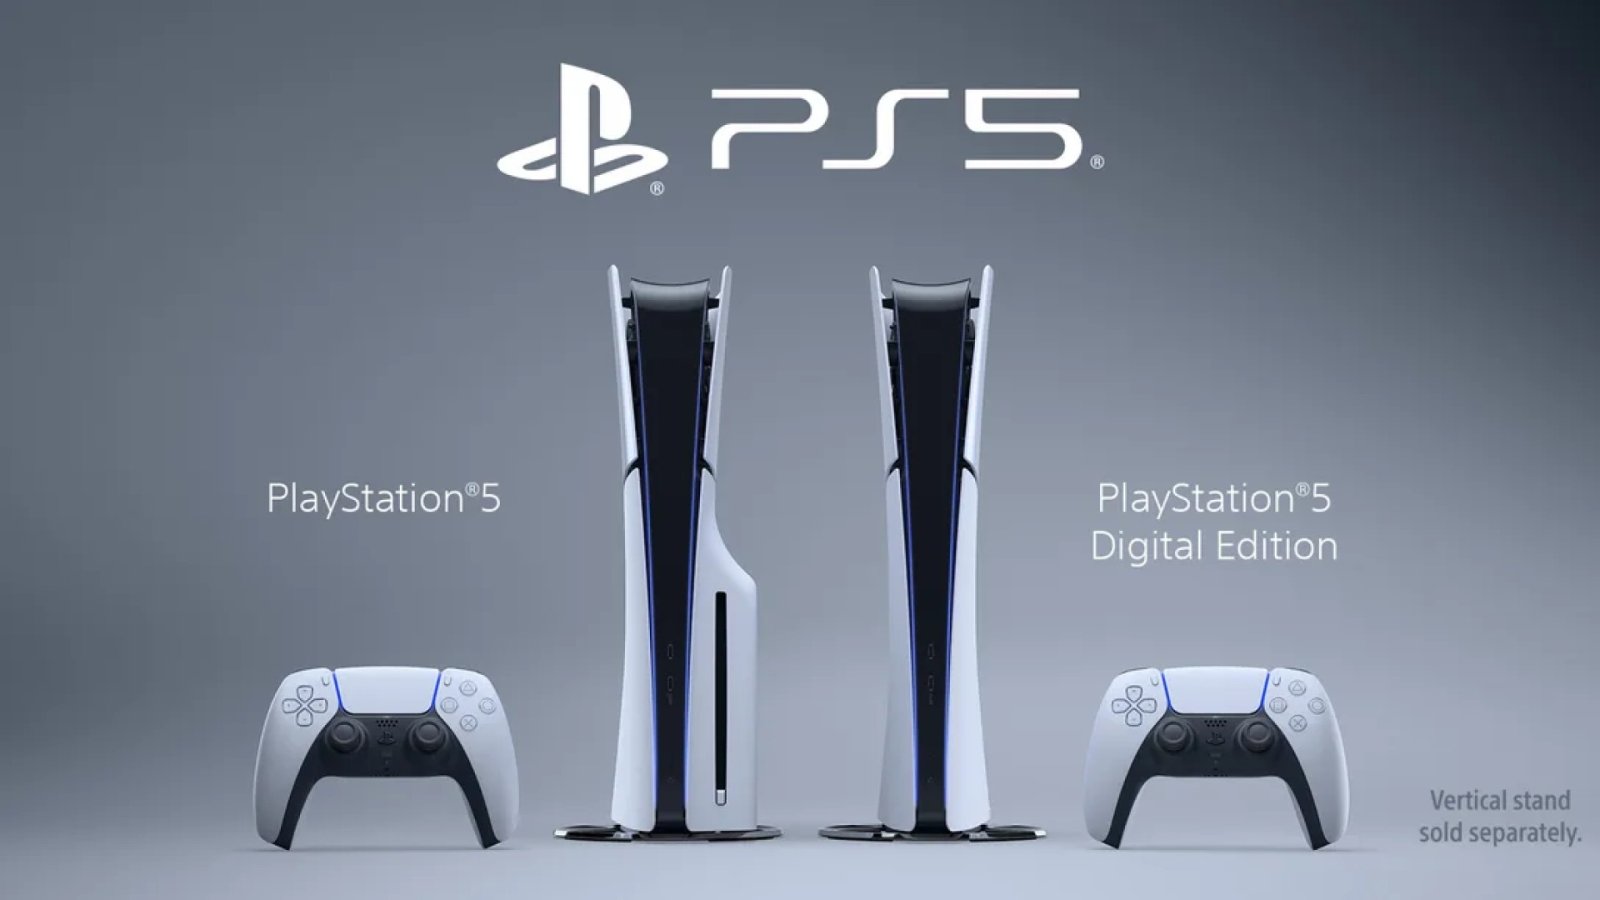 Sony เปิดตัว PlayStation 5 โฉมใหม่ (เรียก PS5 Slim ก็ได้) พร้อมขายพฤศจิกายนนี้